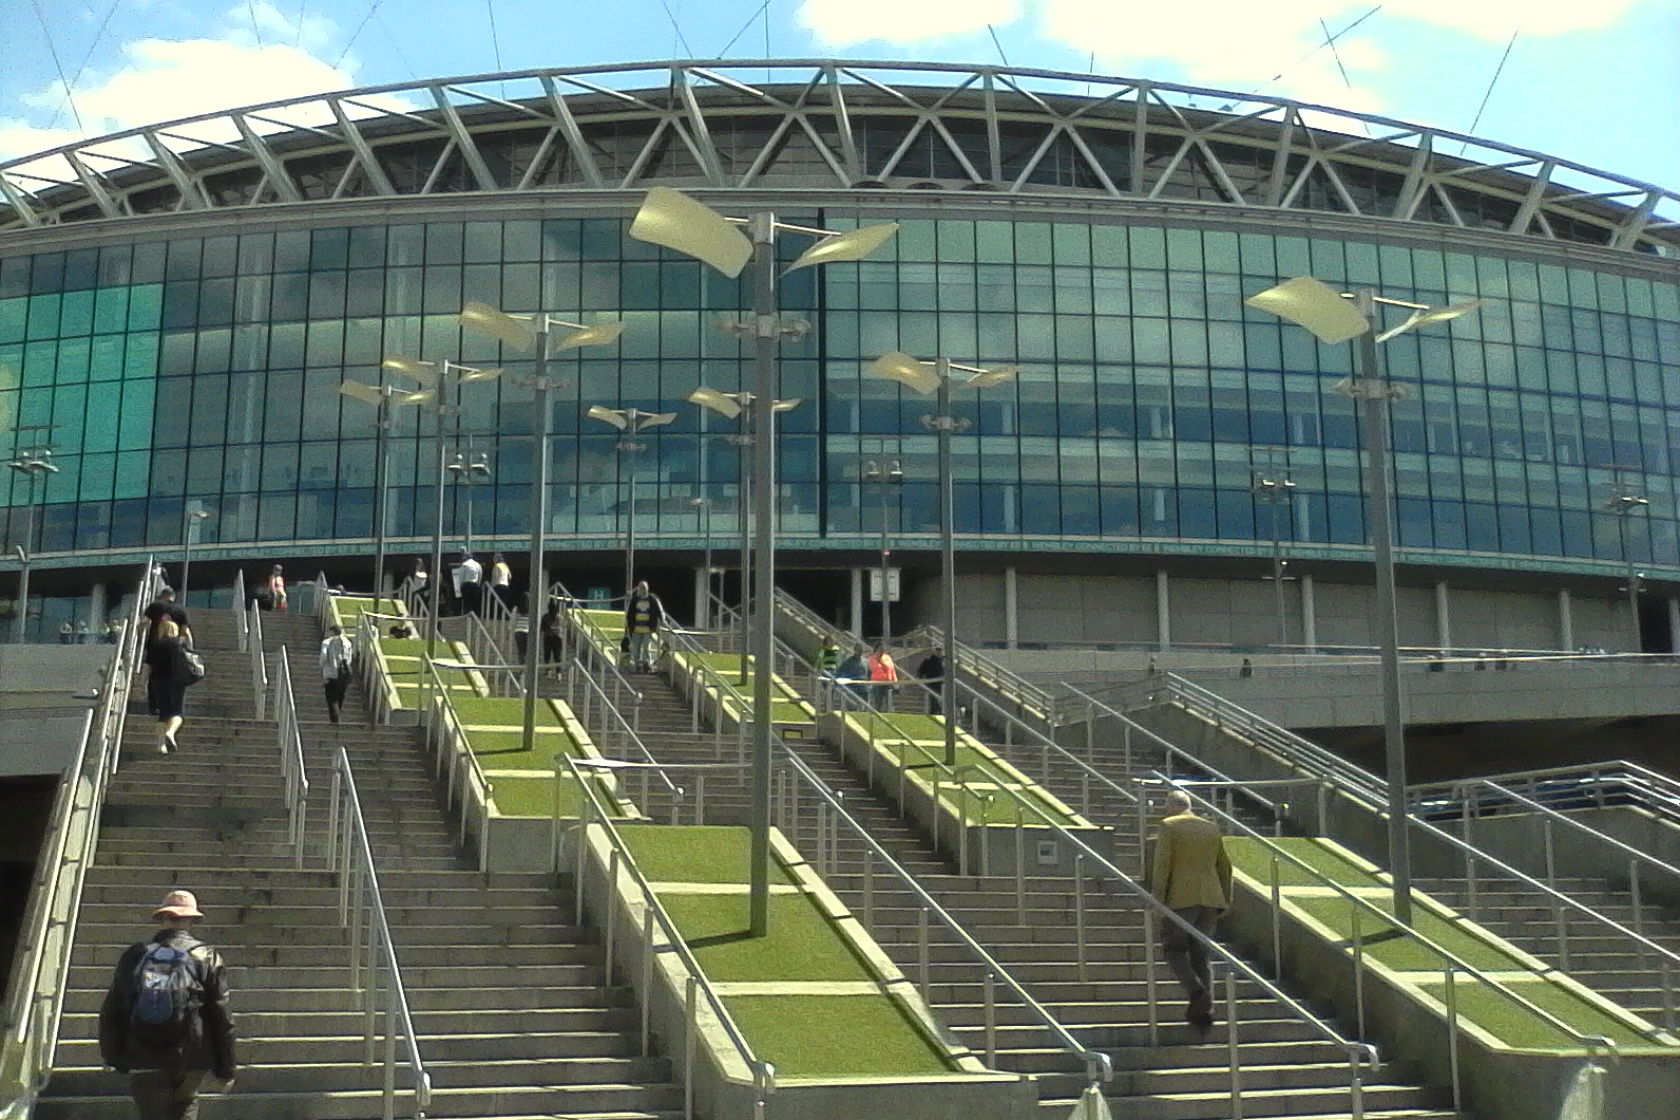 Steps leading up to Wembley Stadium